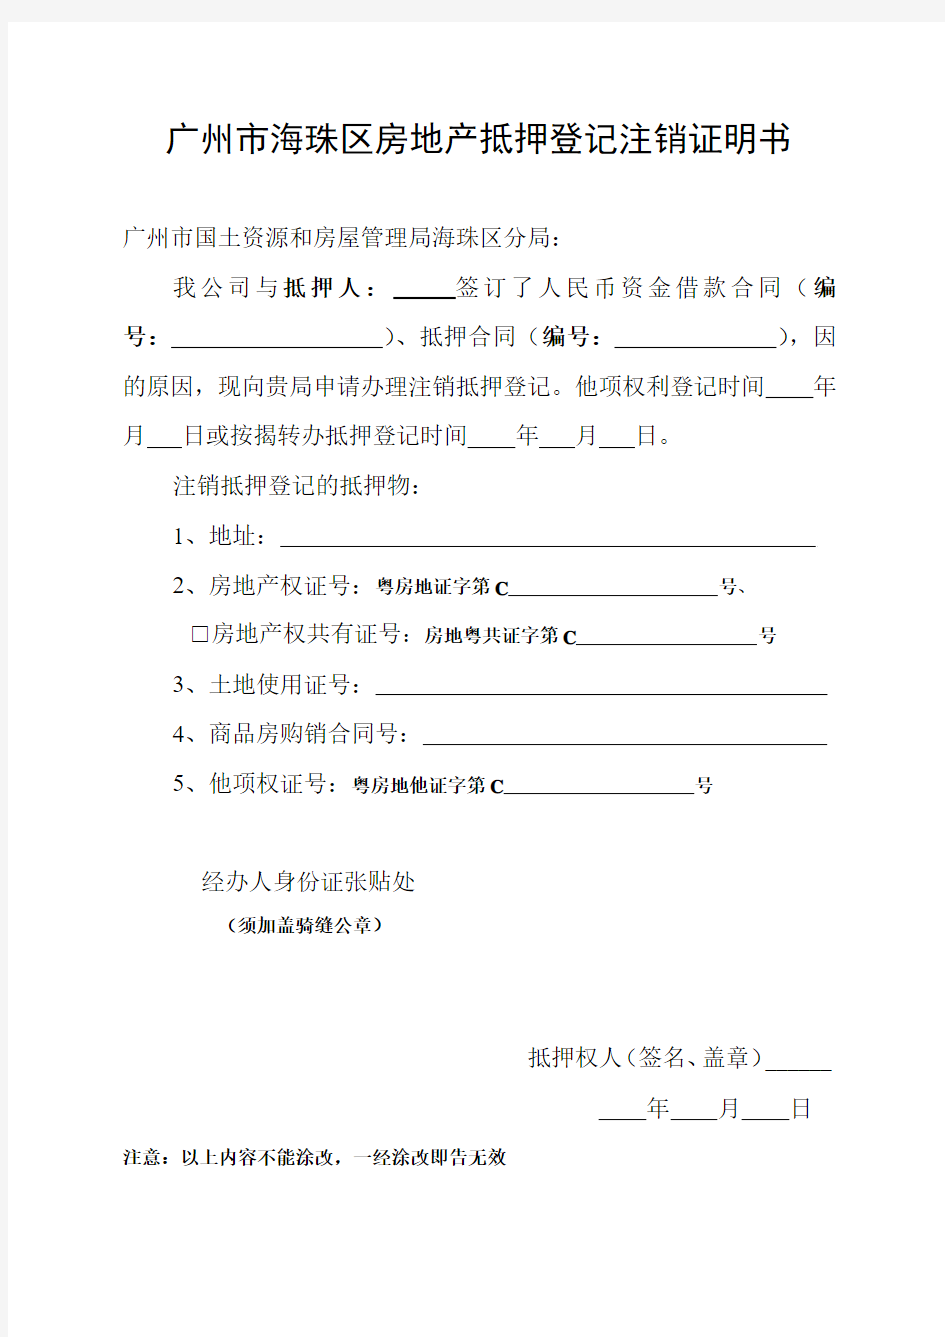 广州市海珠区房地产抵押登记注销证明书